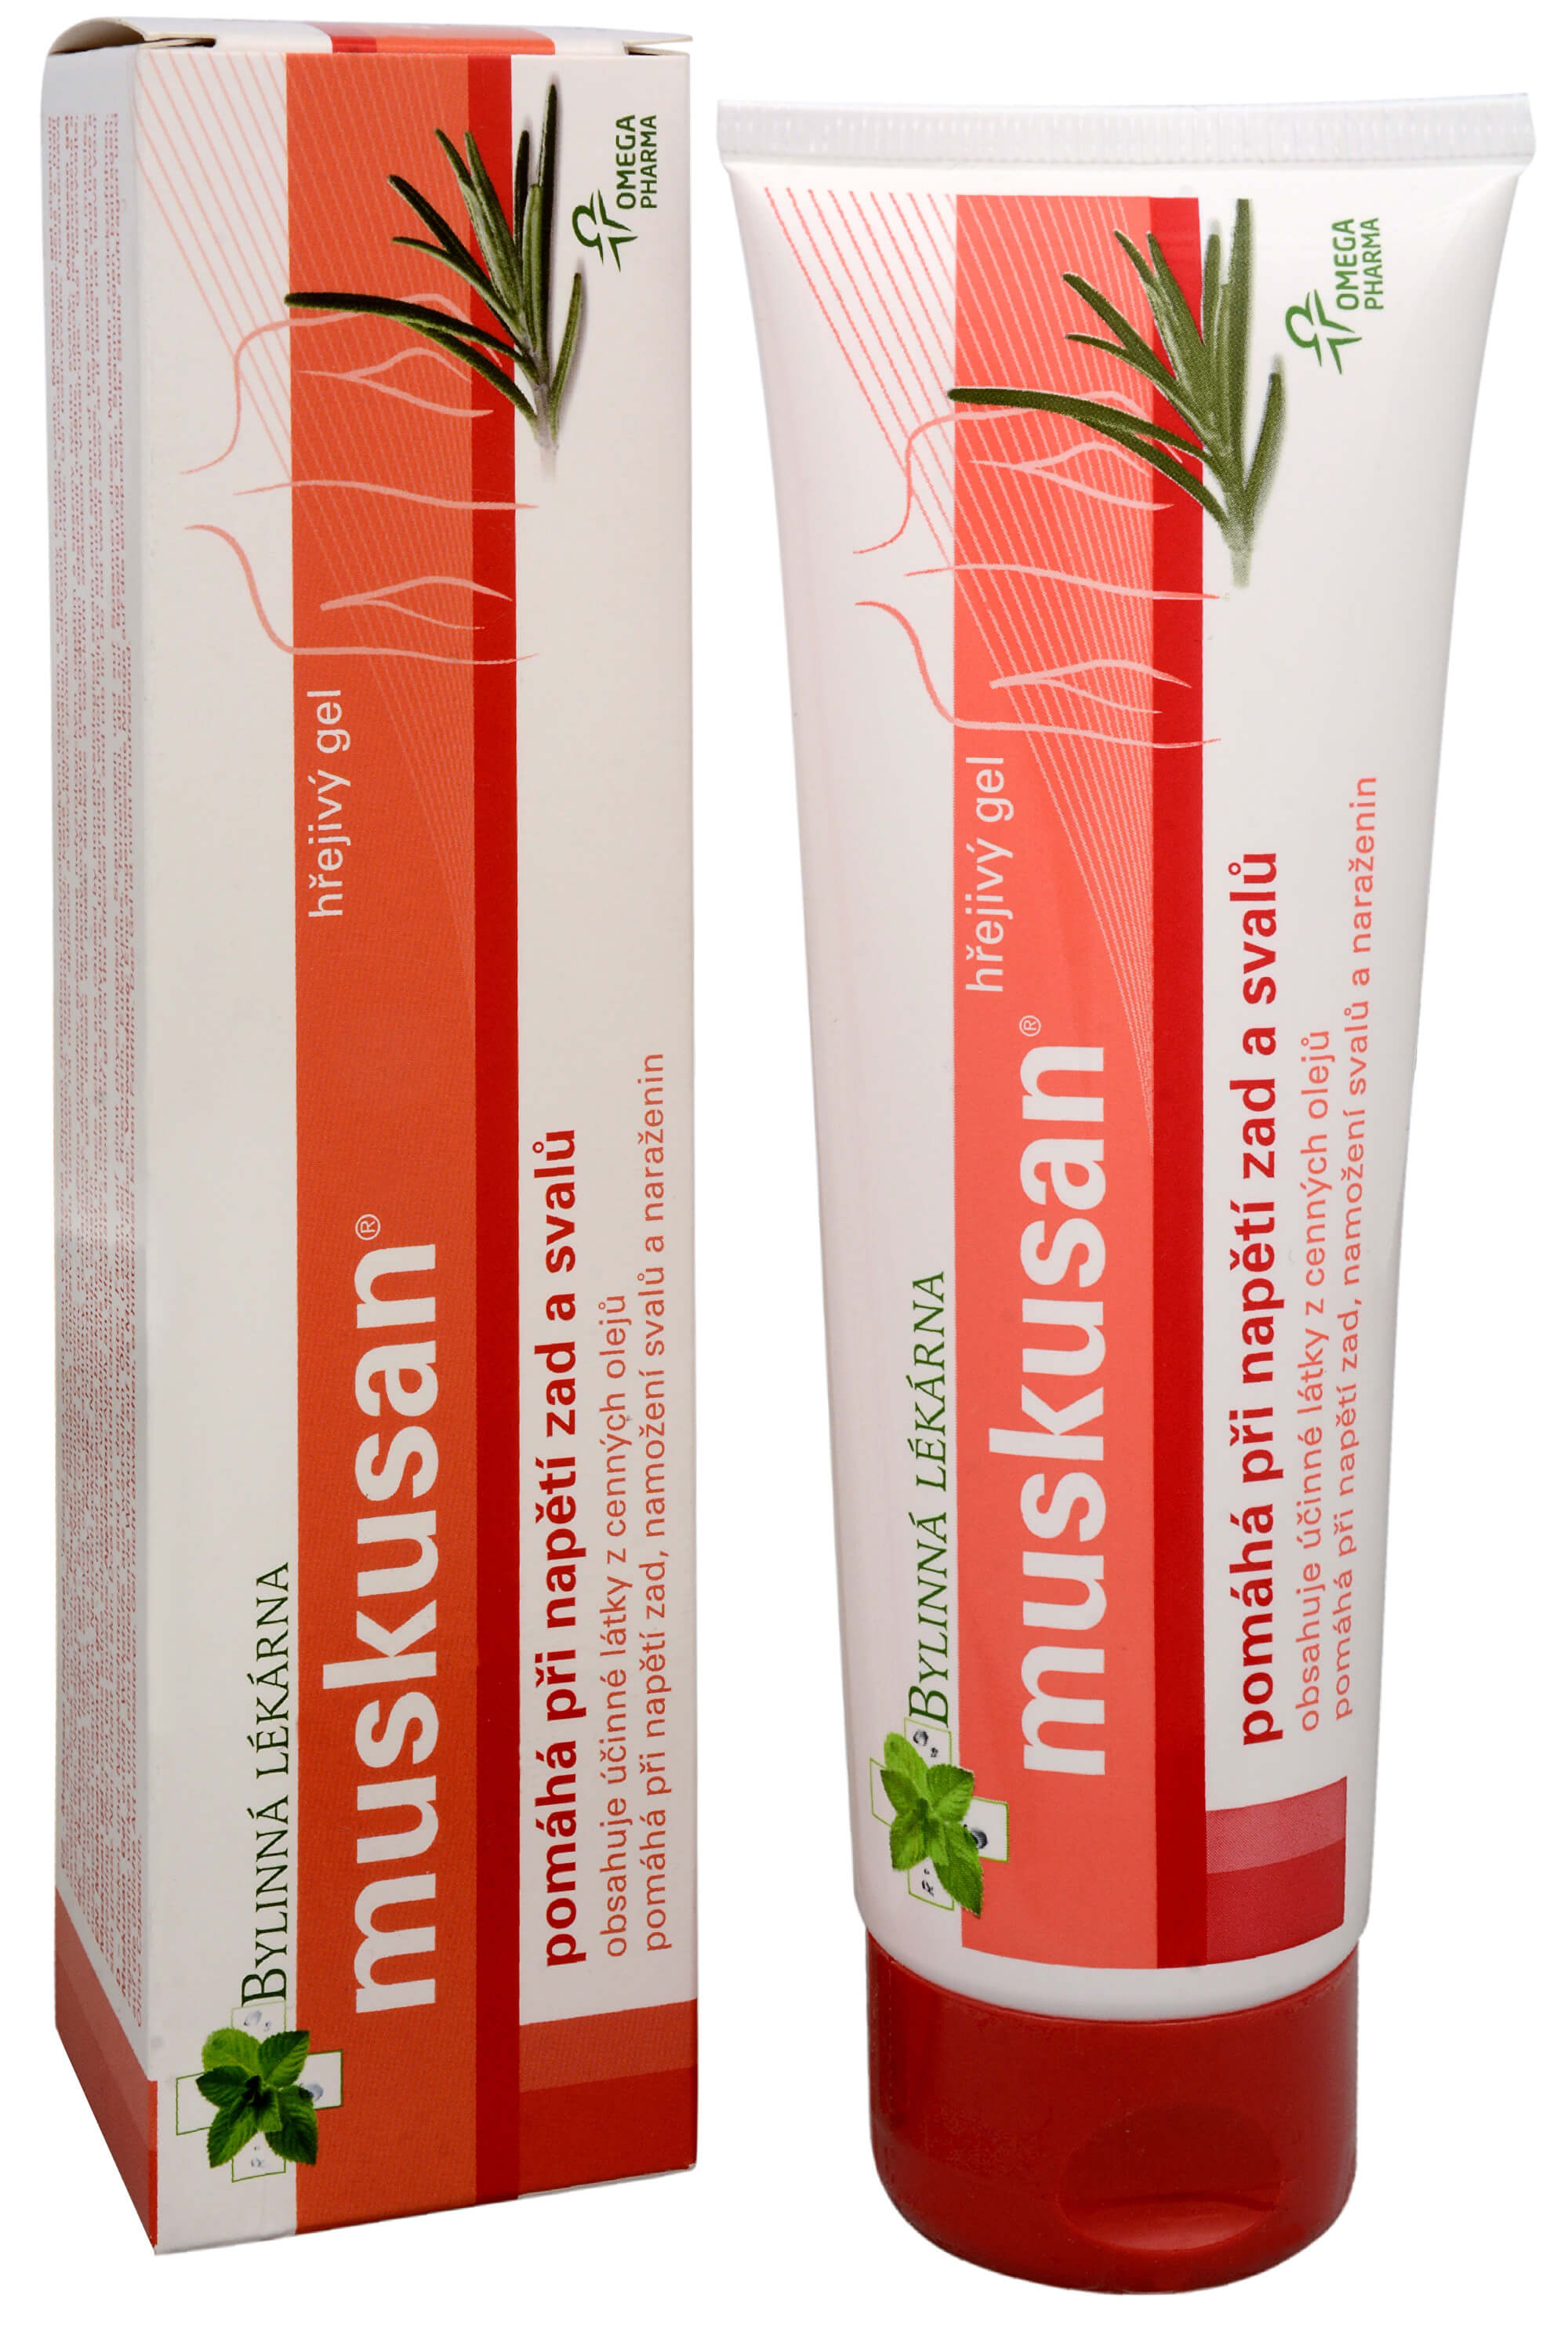 Zobrazit detail výrobku Omega Pharma Muskusan masážní hřejivý gel 120 g + 2 měsíce na vrácení zboží